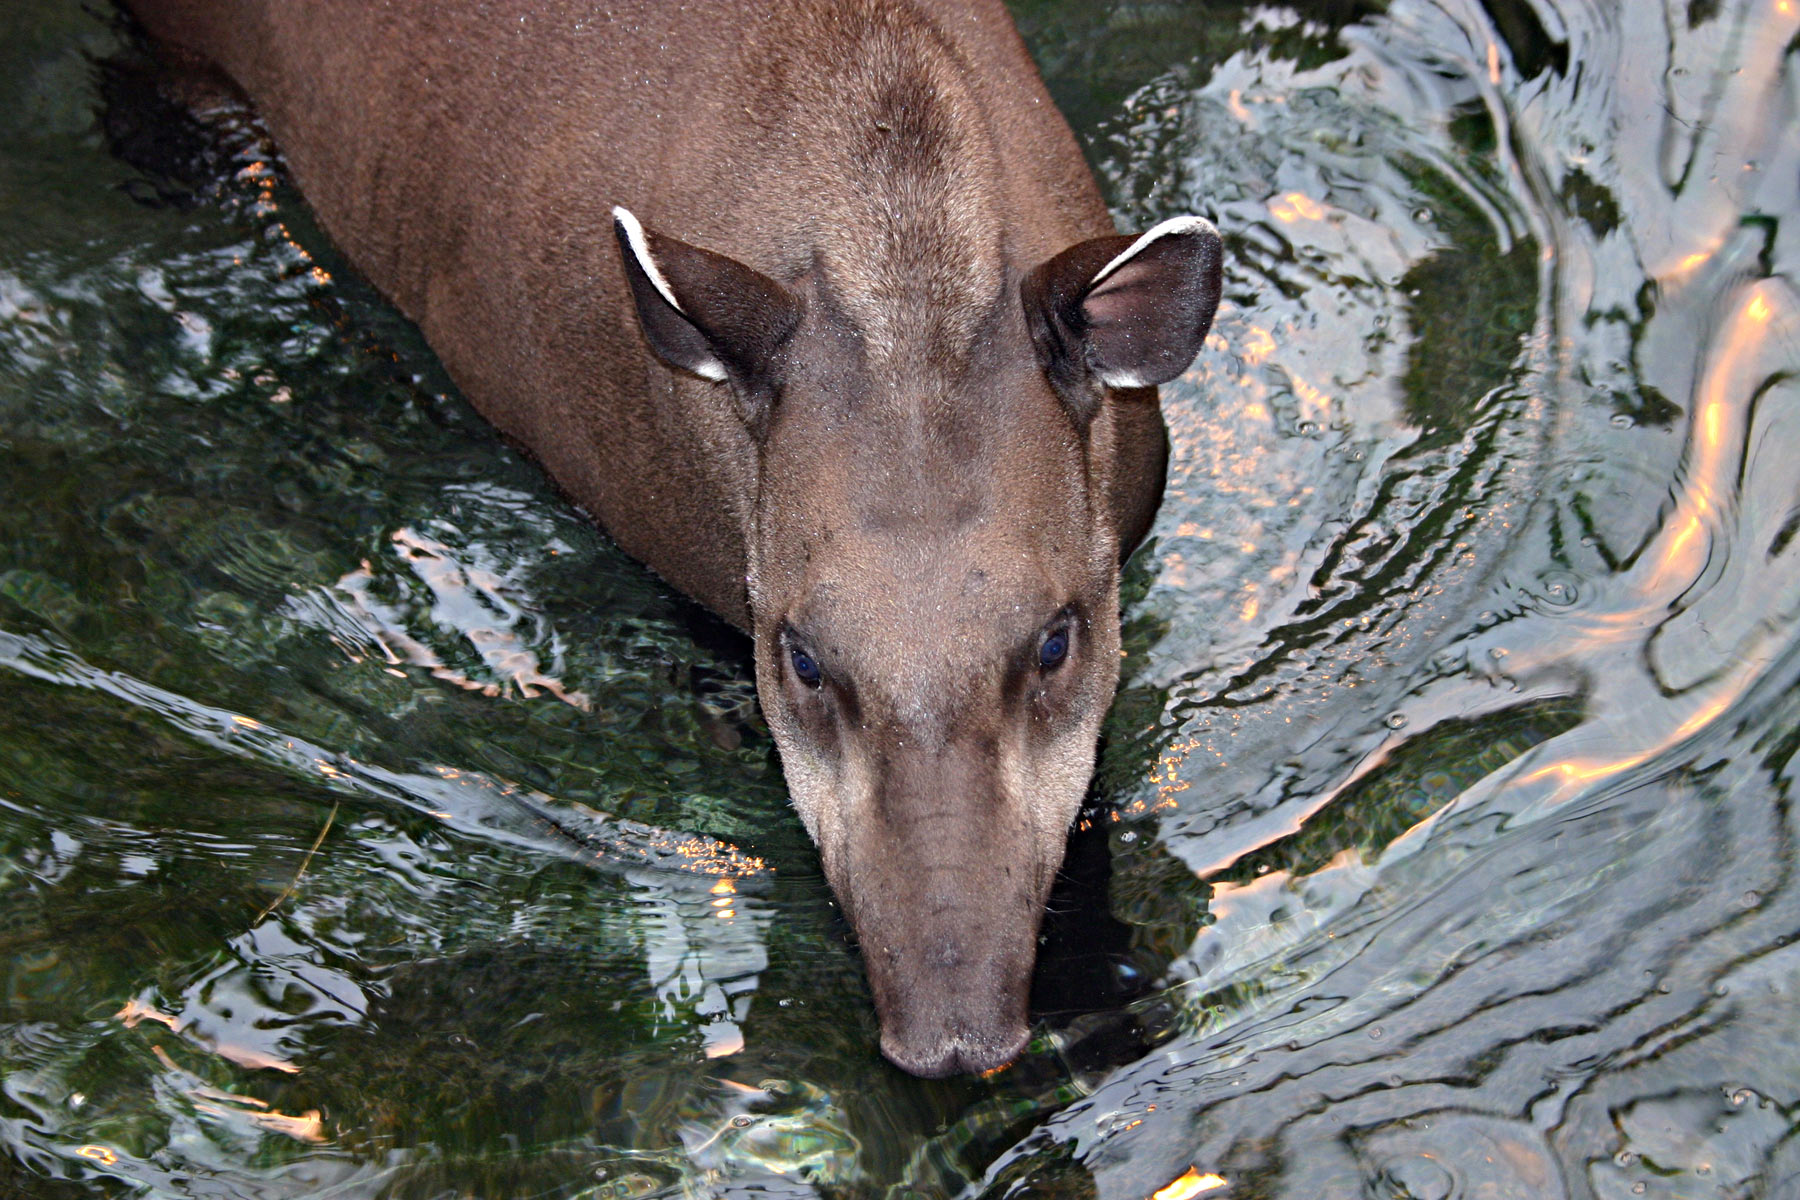 Brazilian tapir in water photo